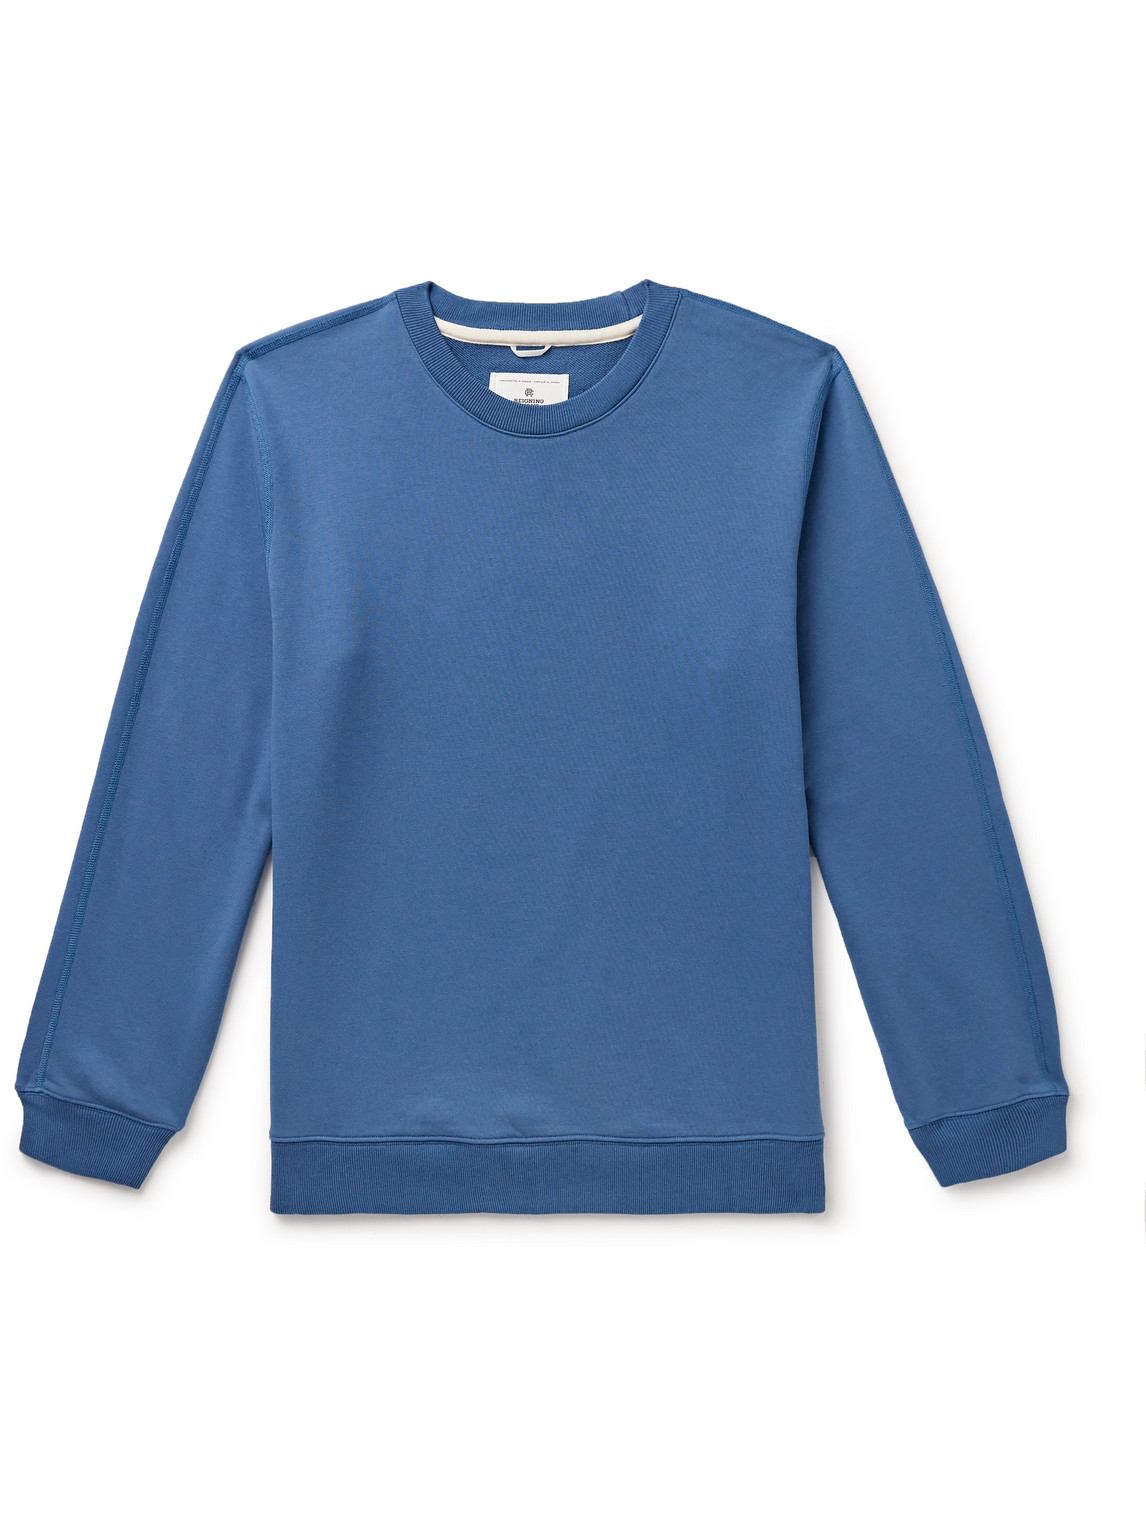 Reigning Champ - Cotton-Jersey Sweatshirt - Men - Blue - S von Reigning Champ